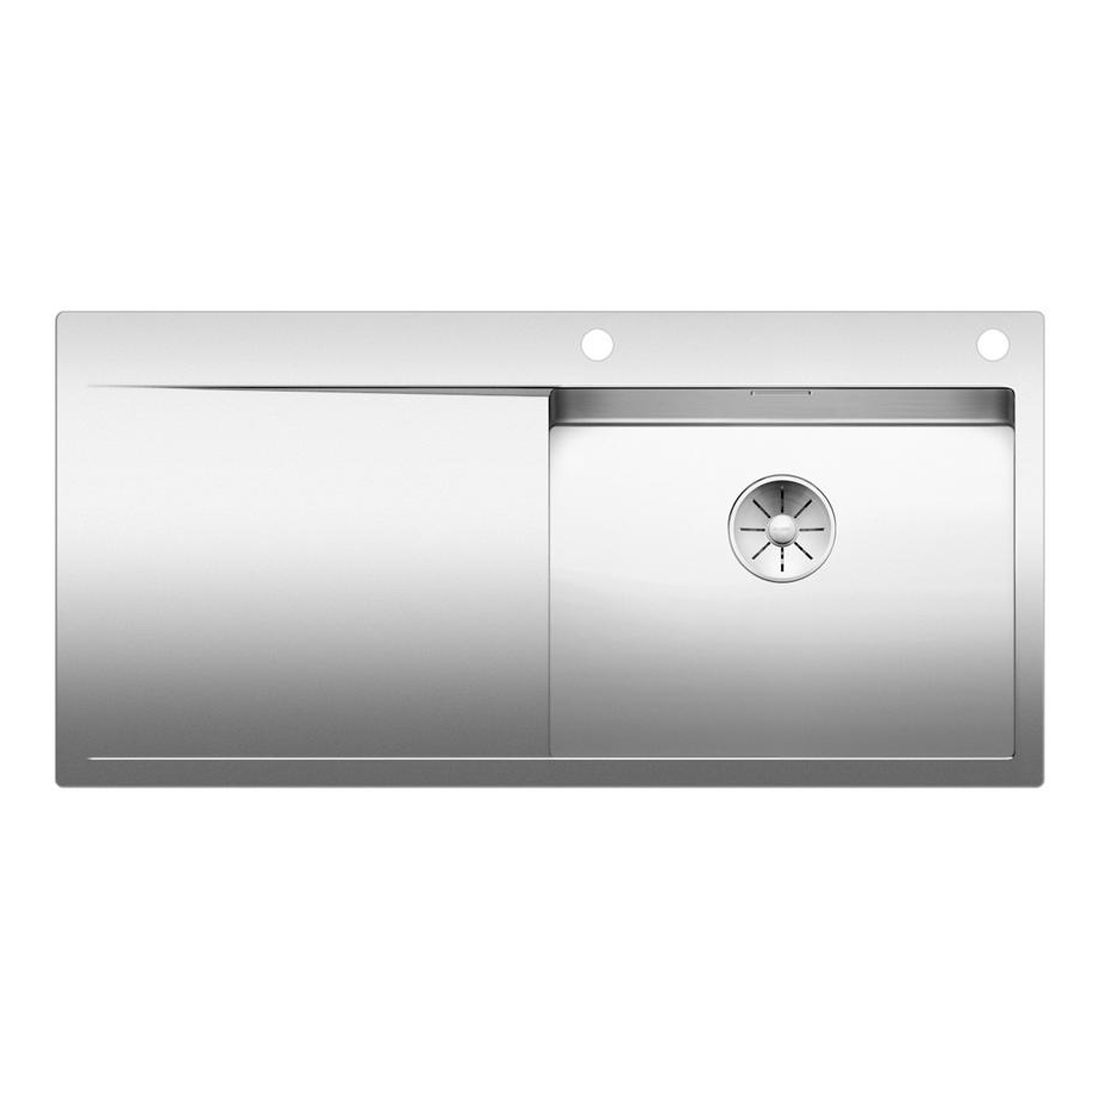 Кухонная мойка Blanco Flow XL 6S-IF полированная сталь набор аксессуаров inda indissima barra 400c67mns51n сталь